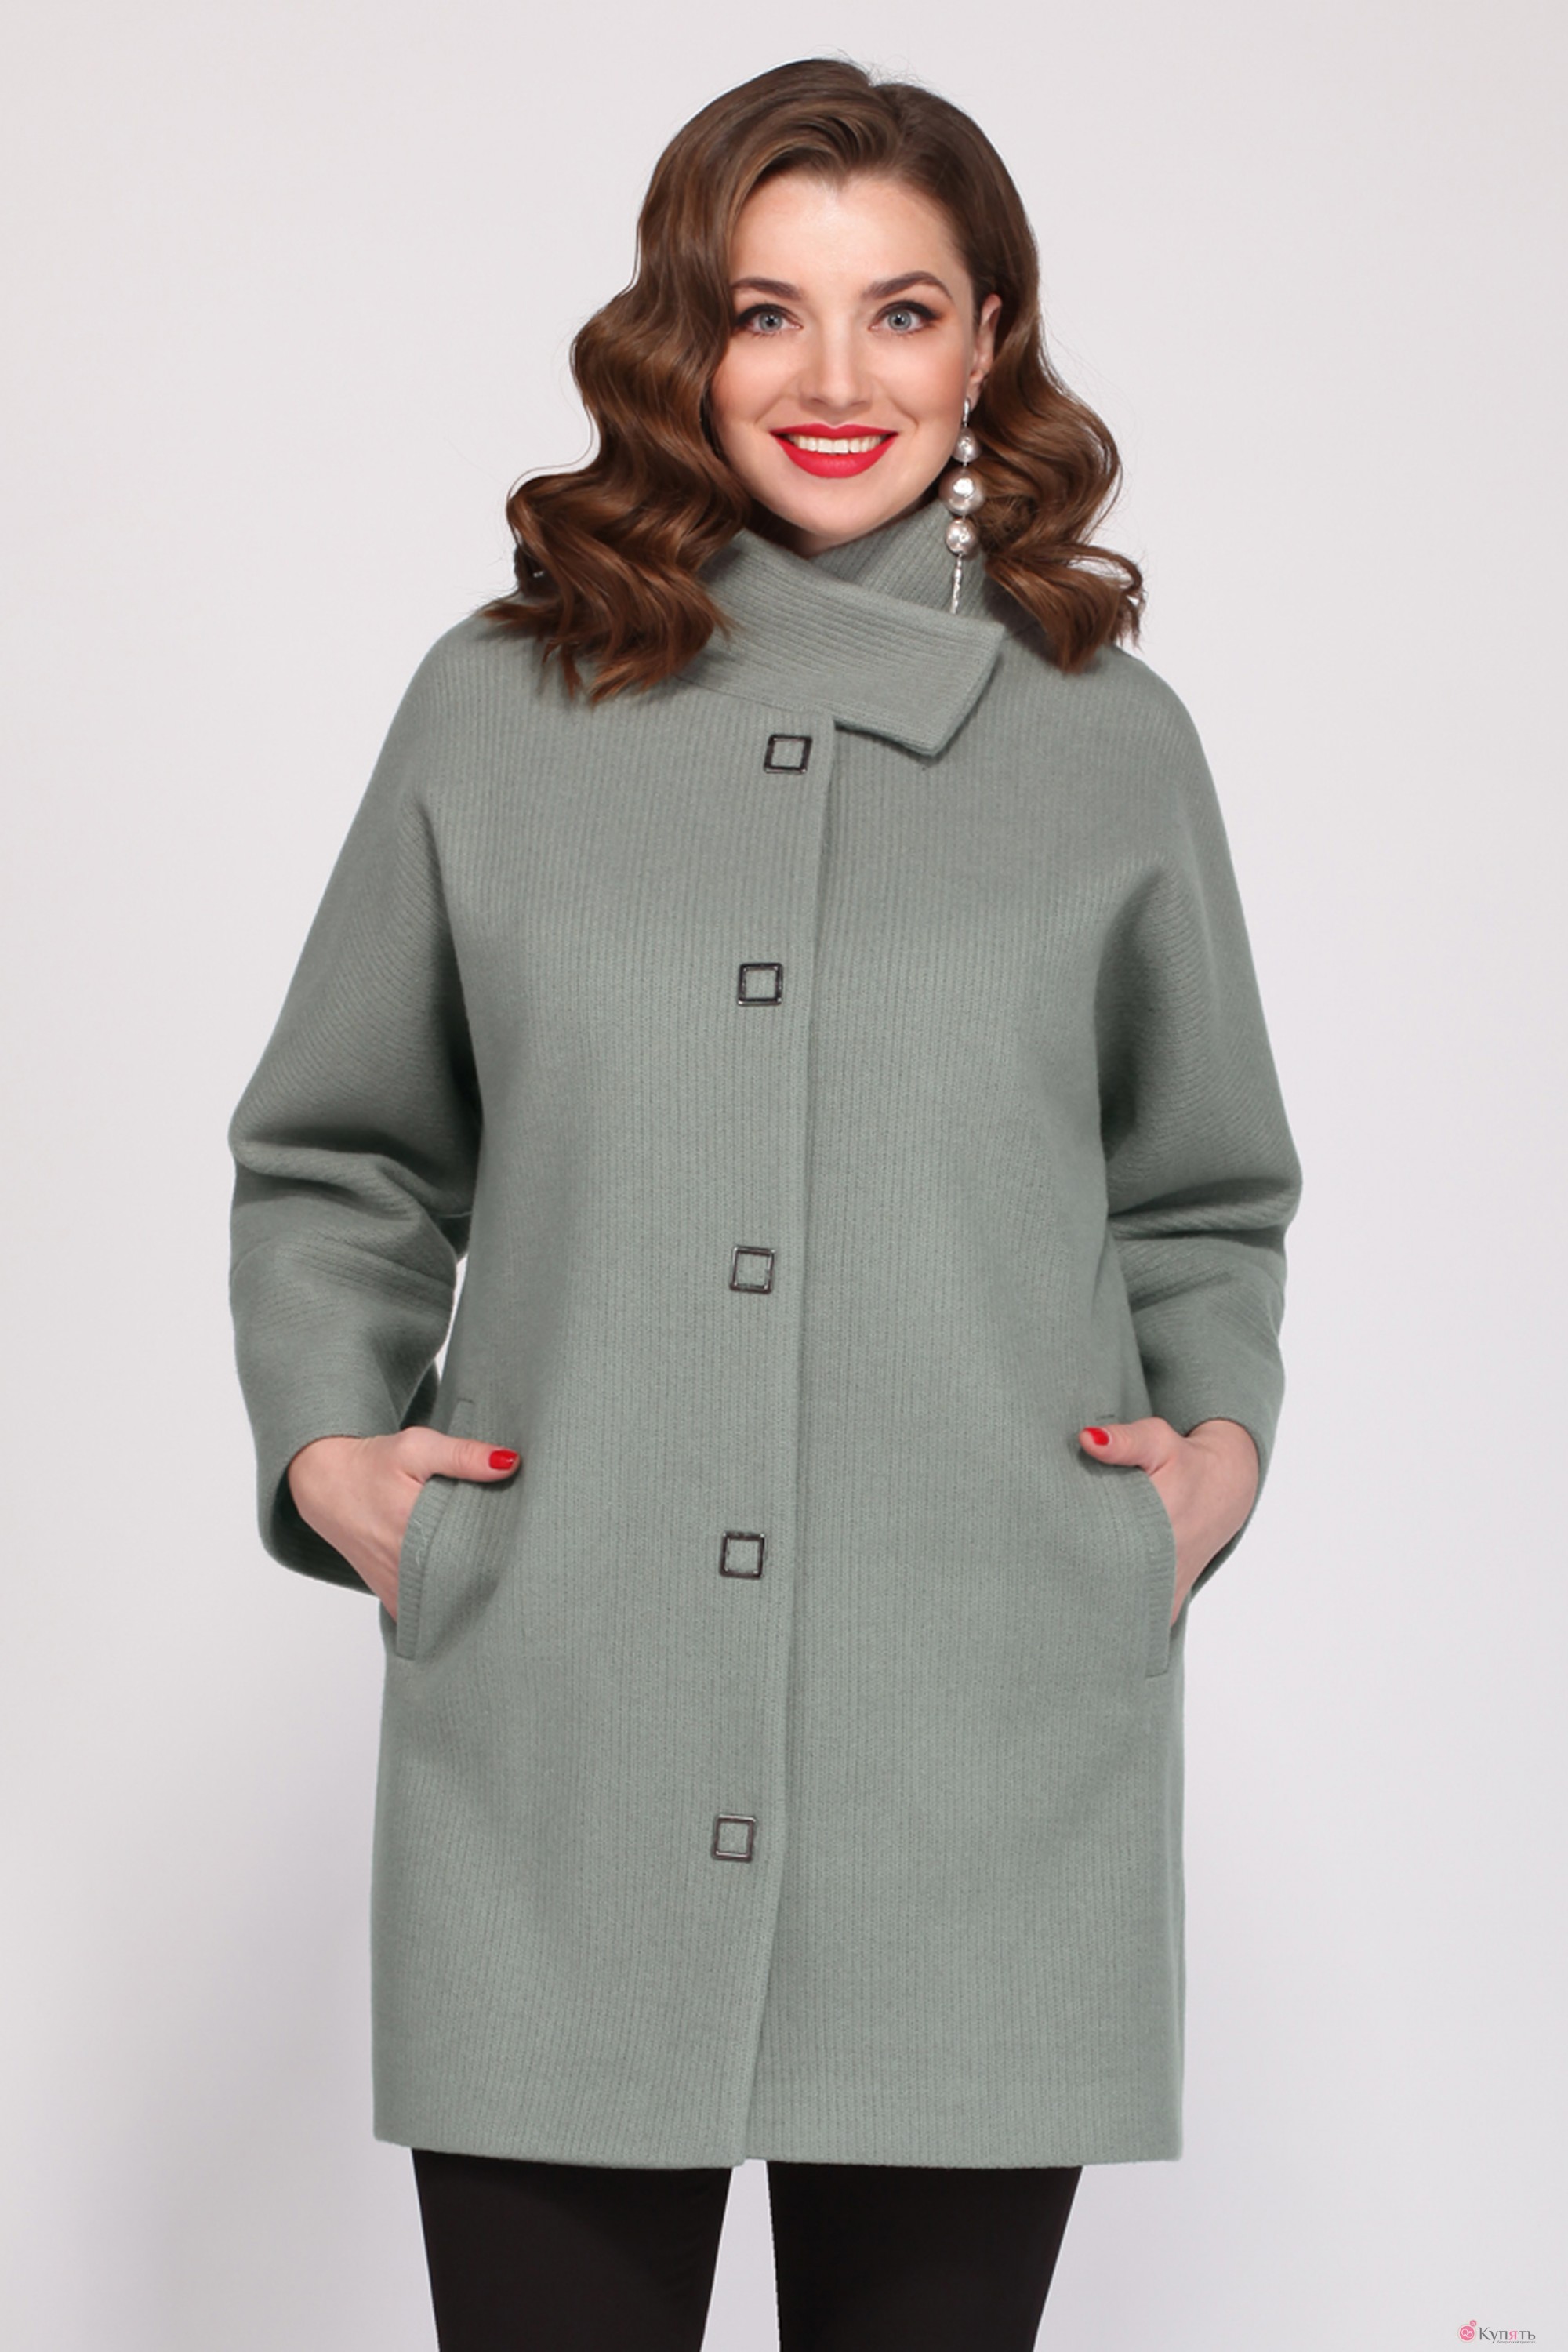 Пальто демисезонное 52 размера. Пальто Матини .2.1024. Полупальто для полных женщин. Фасоны пальто для полных. Пальто для полных женщин.